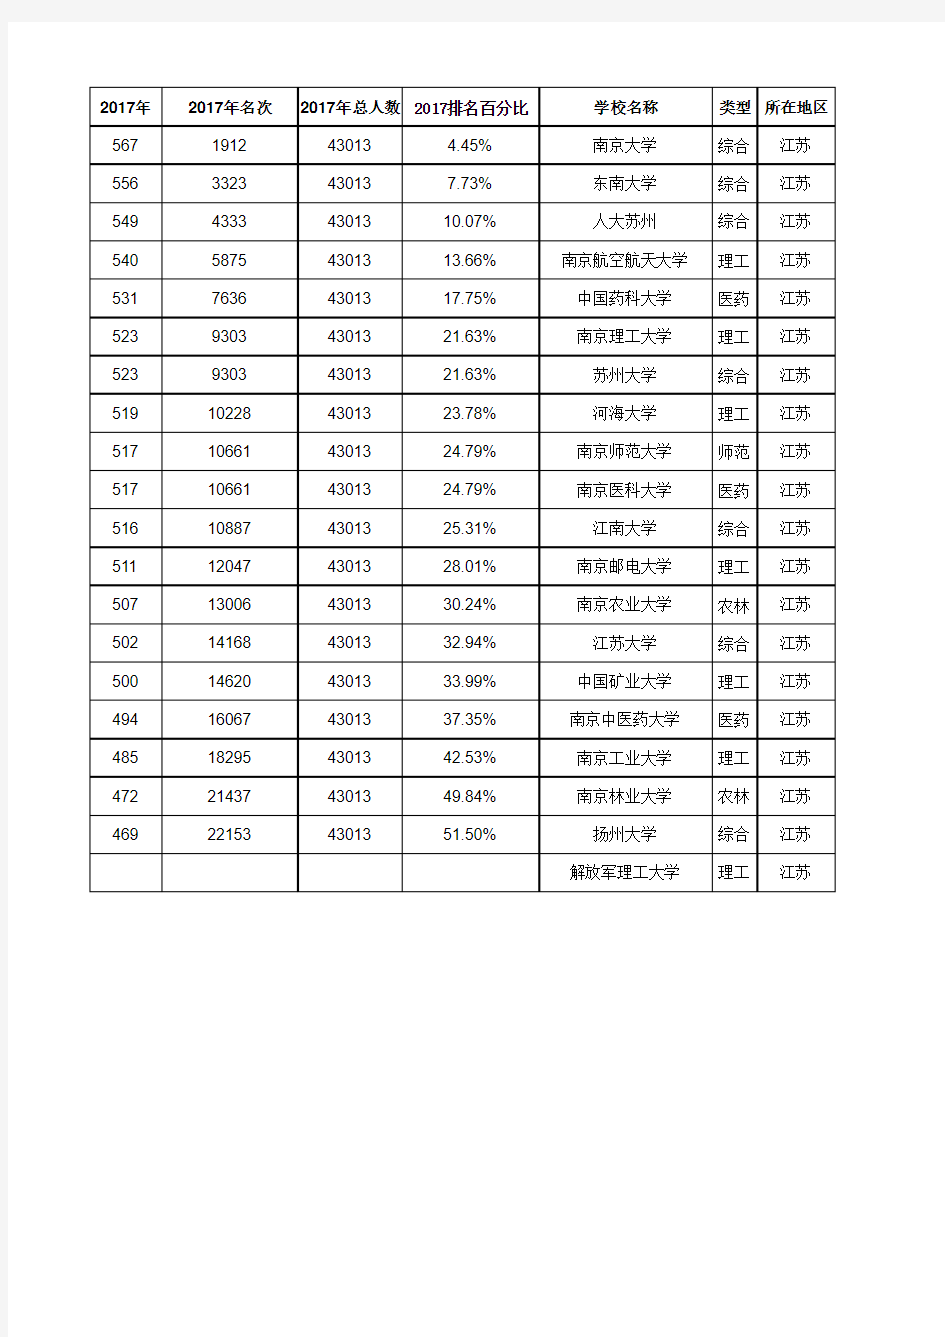 上海高考各高校分数及分数排名